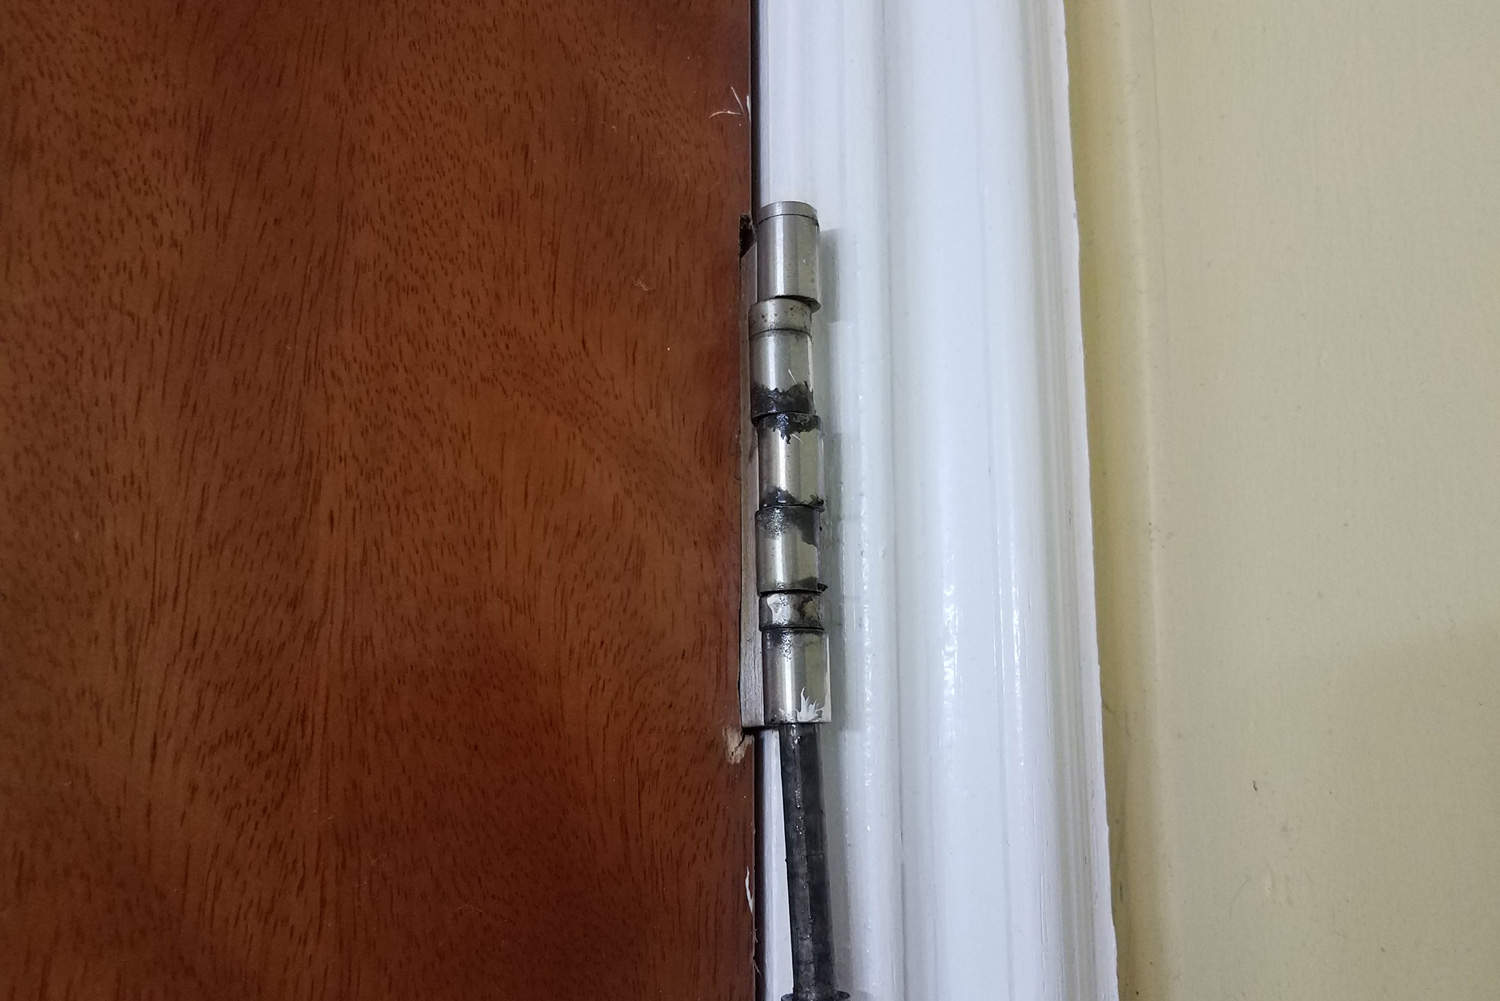 broken or loose metal hinge and bolt on door